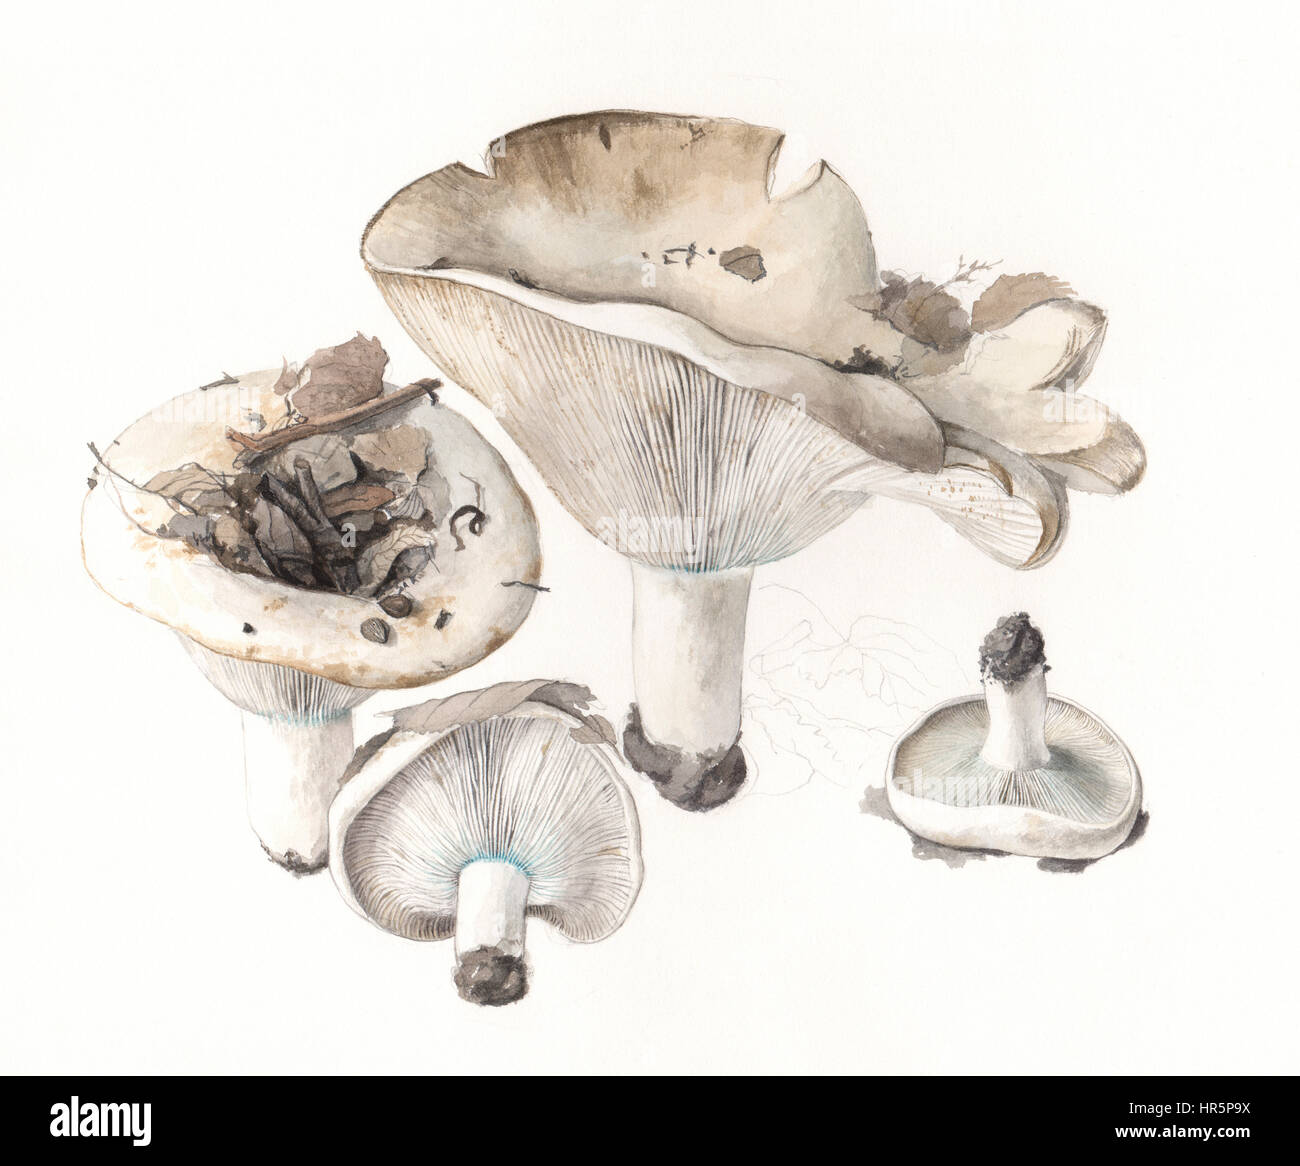 Pilze ubling Brevipes. Handgemaltes Aquarell Abbildung von Waldpilzen im natürlichen Kontext, Wollweiß Hintergrund. Stockfoto